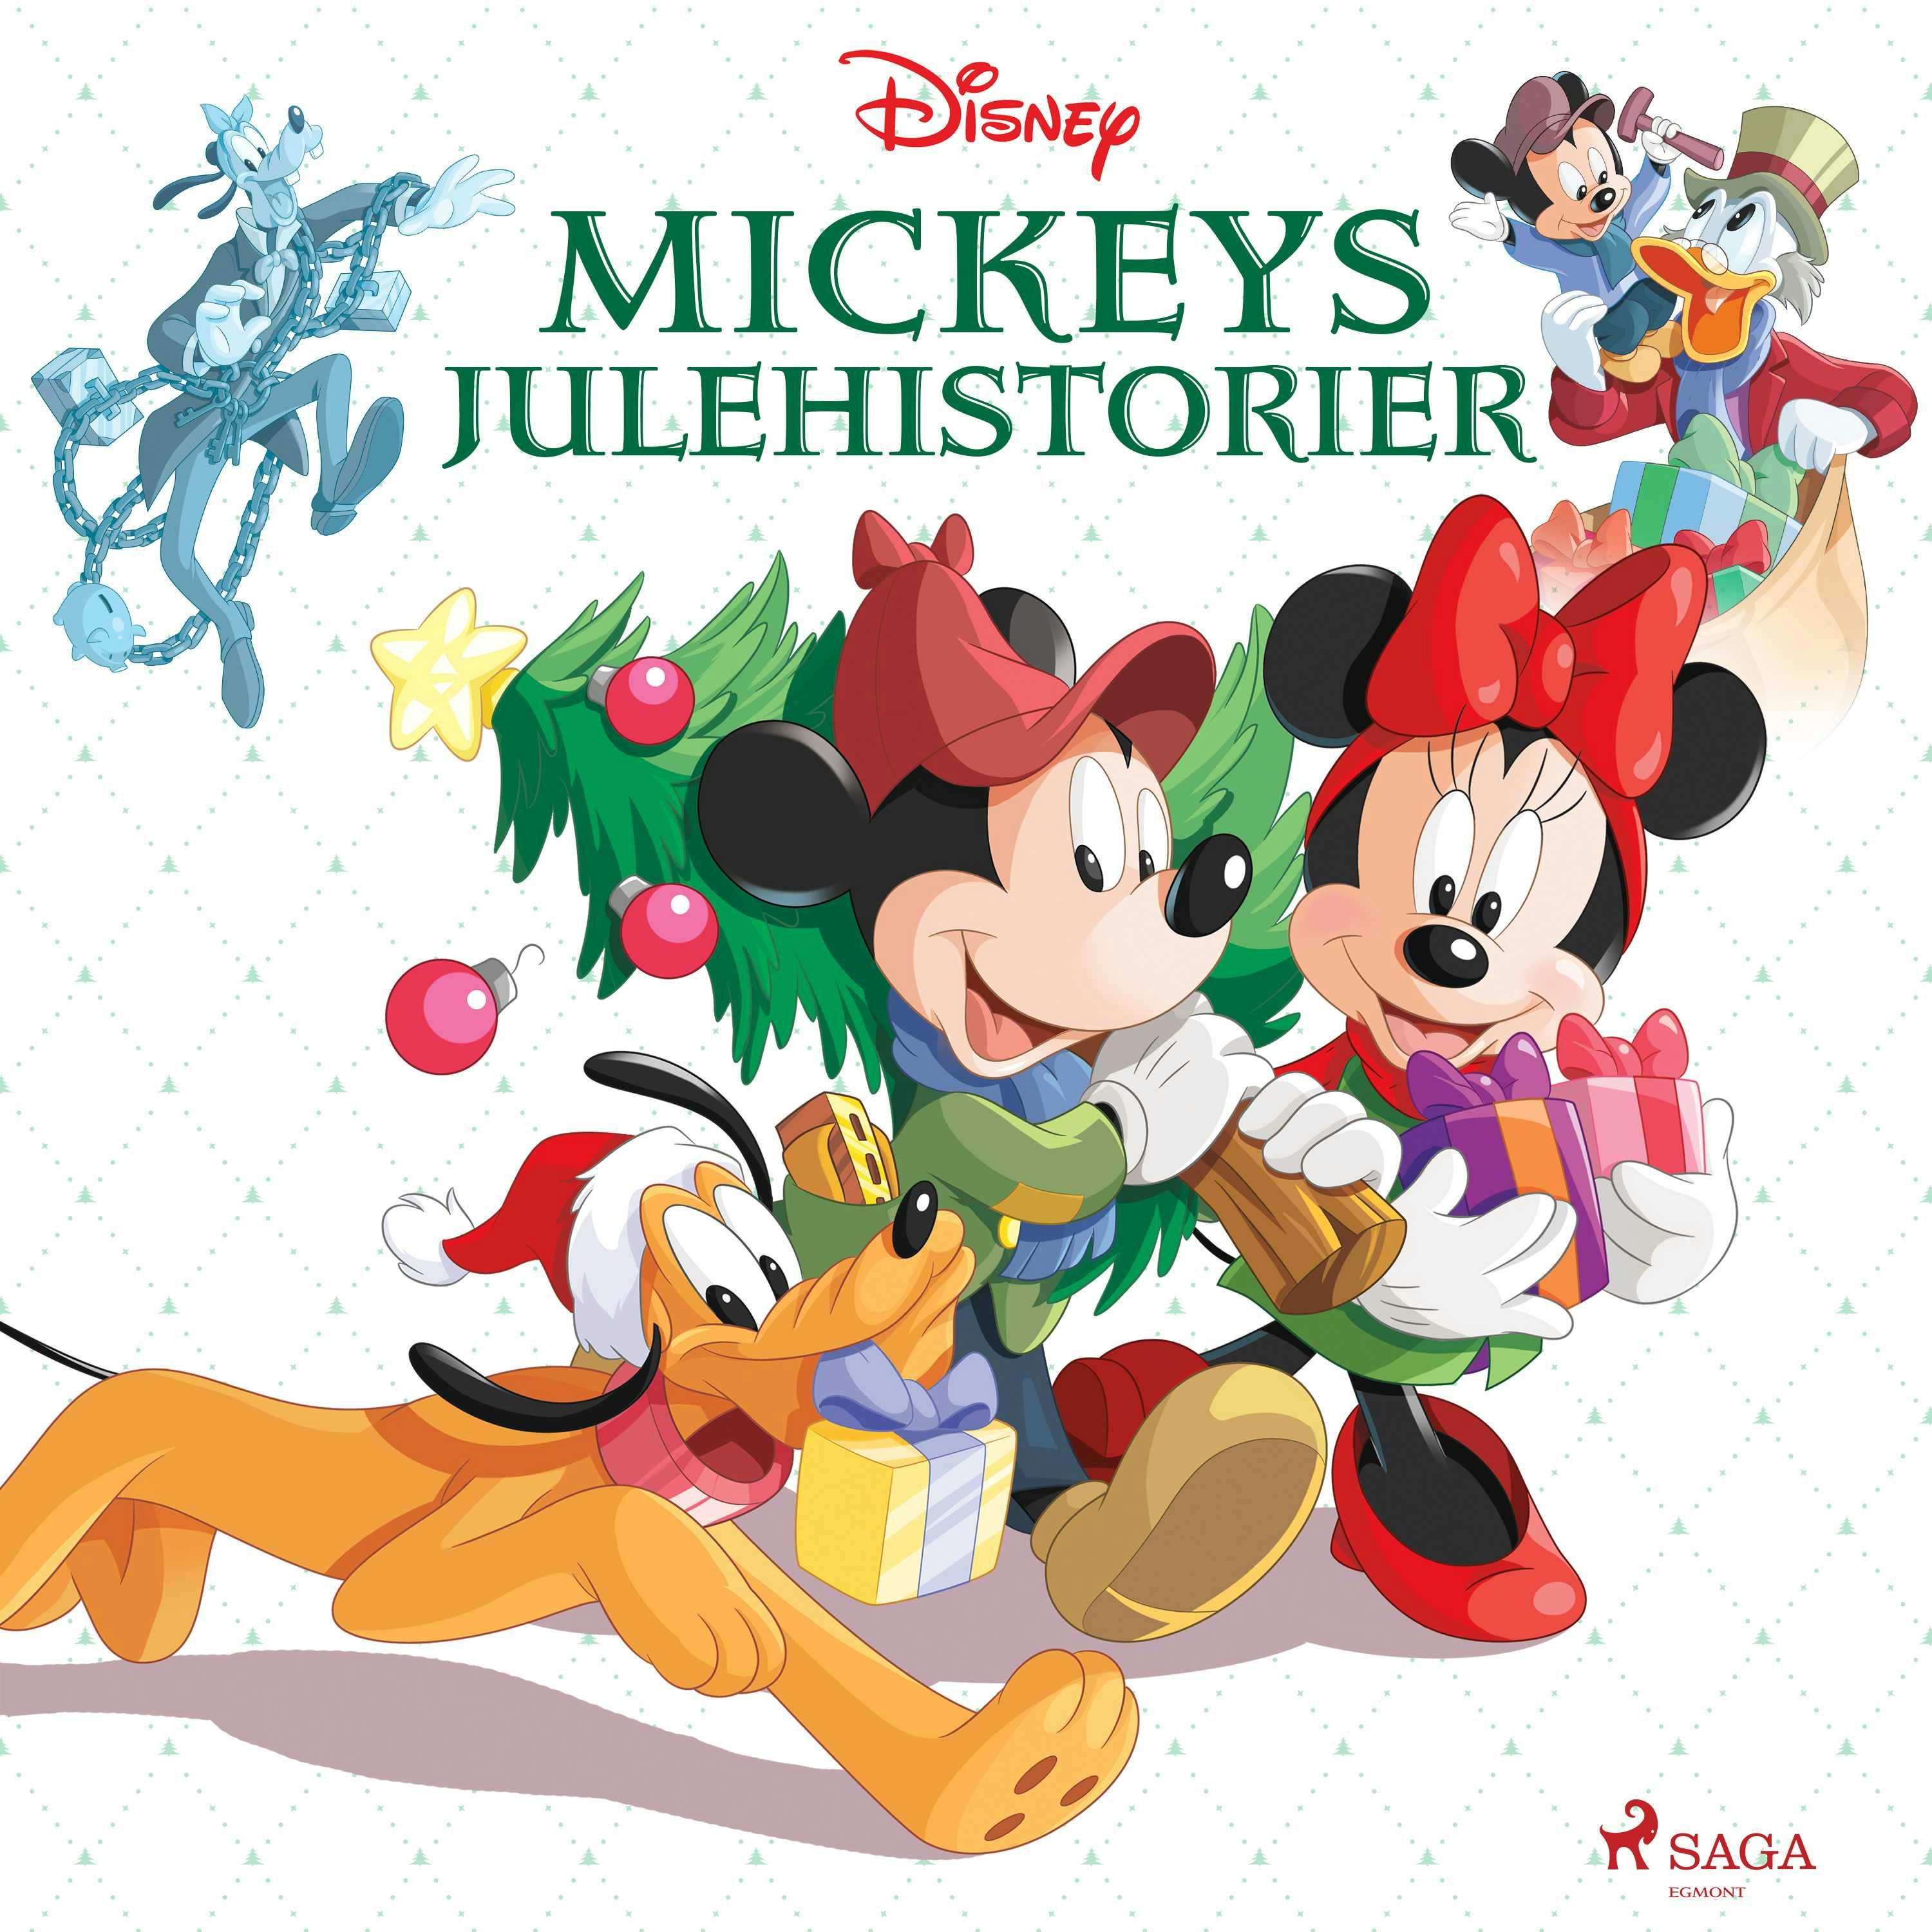 Mickeys julehistorier - – Disney